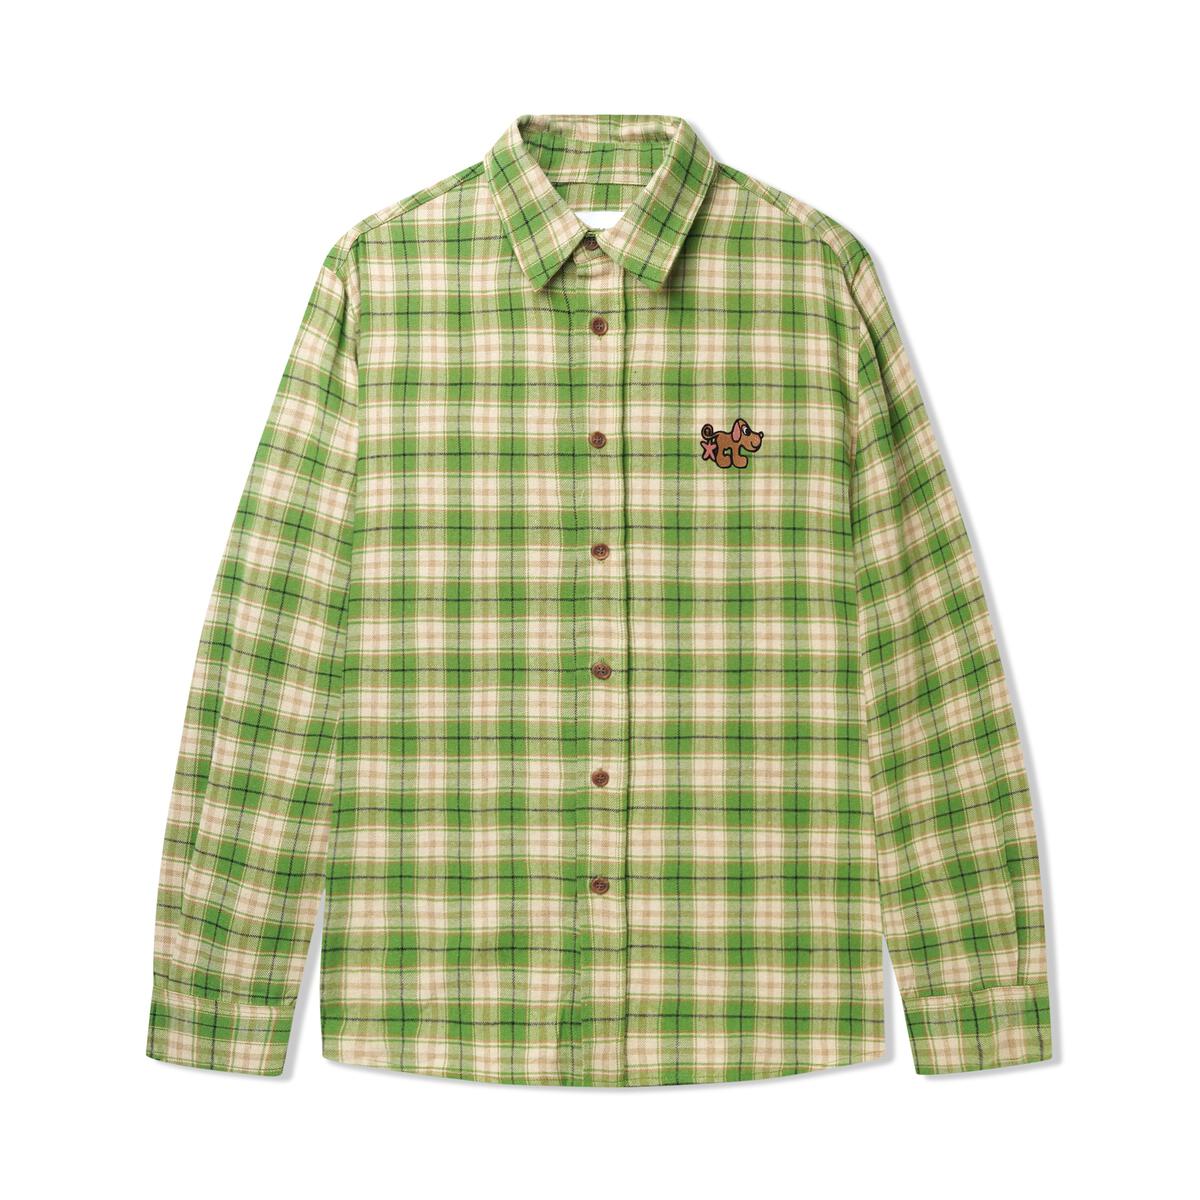 Pooch Flannel Shirt - Fern